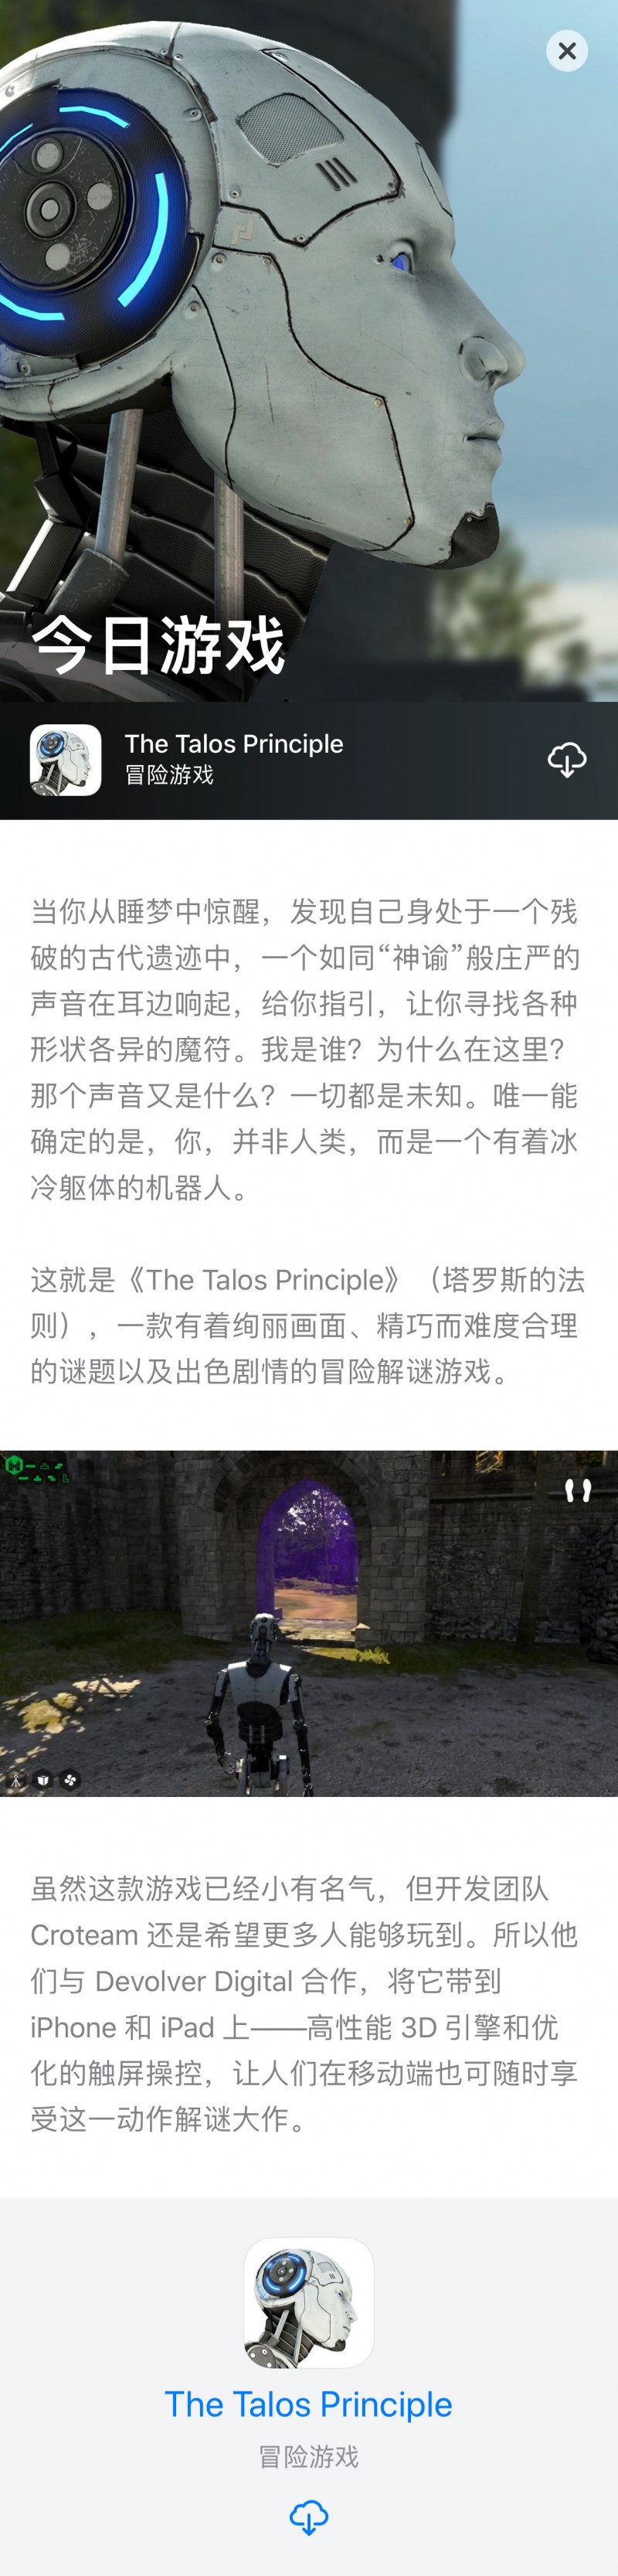 [已购]The Talos Principle-草蜢资源